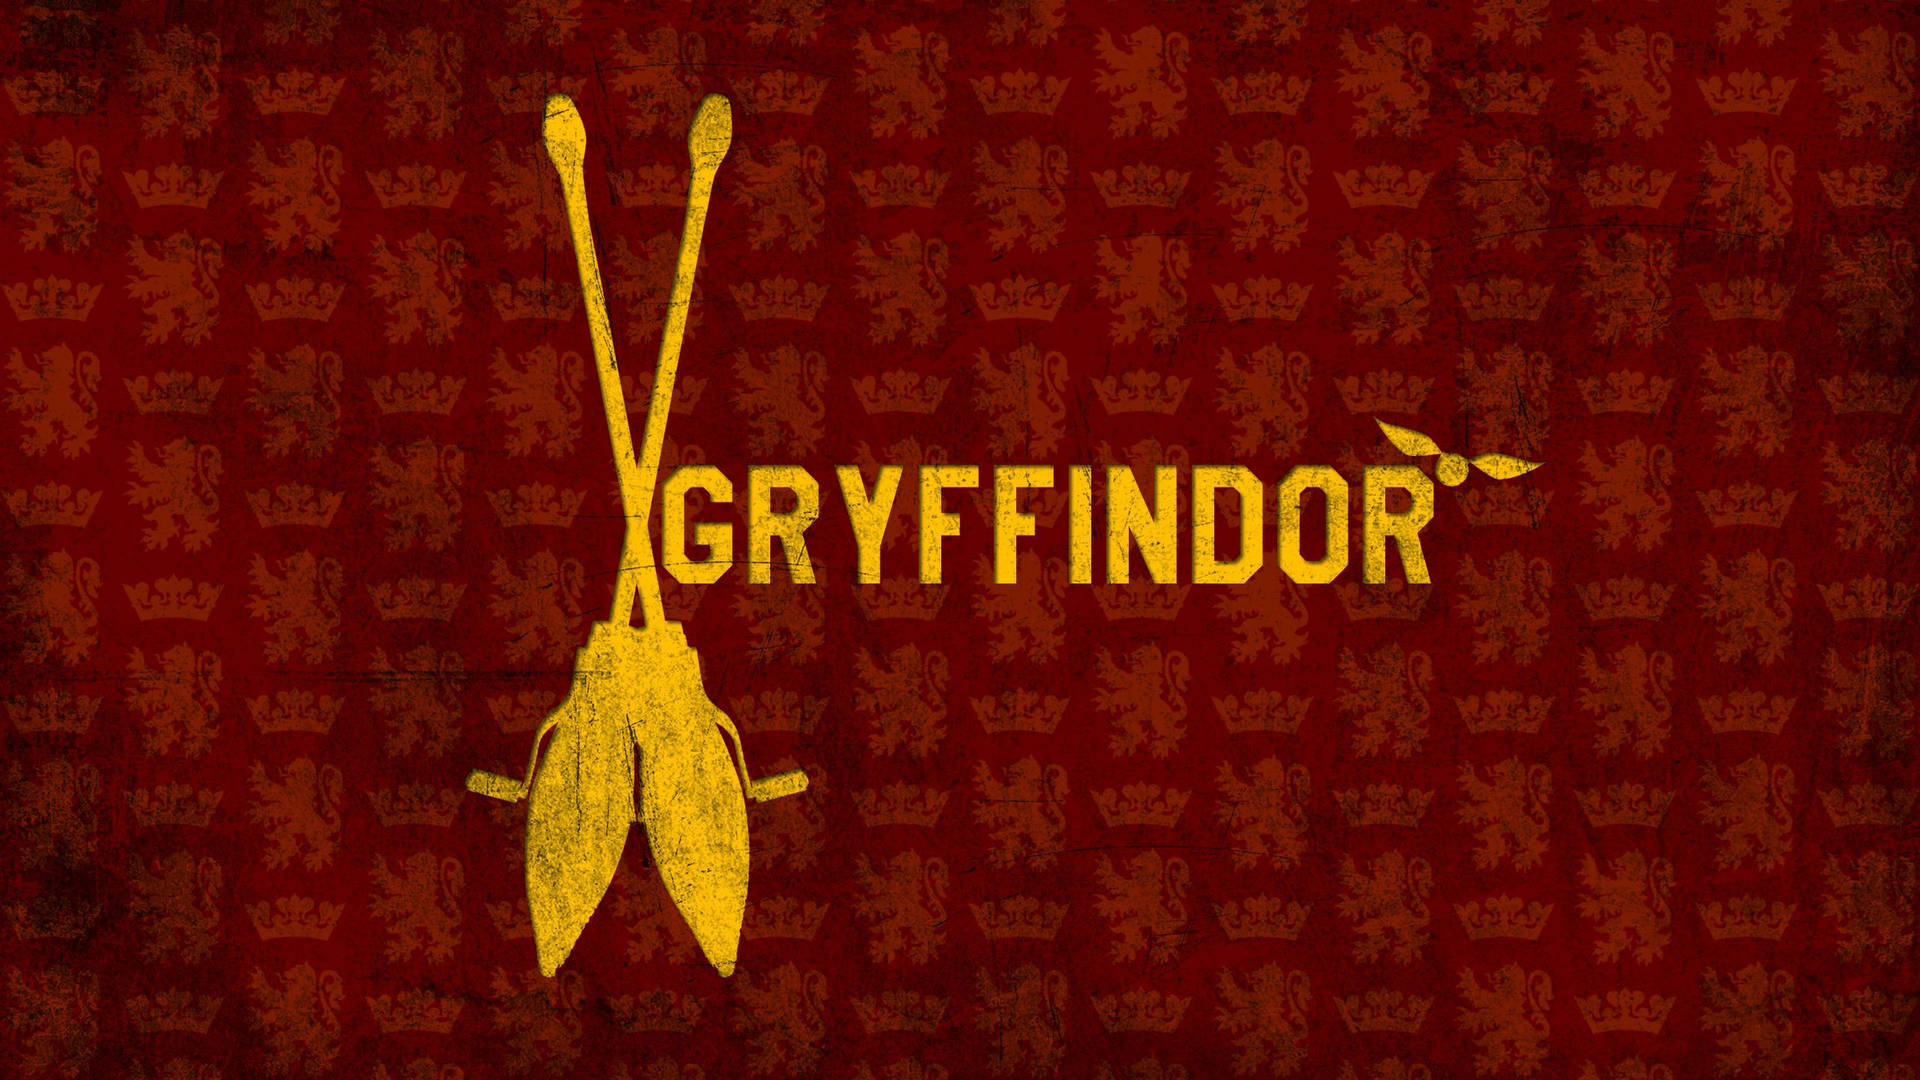 Harry Potter Gryffindor Quidditch Team Background